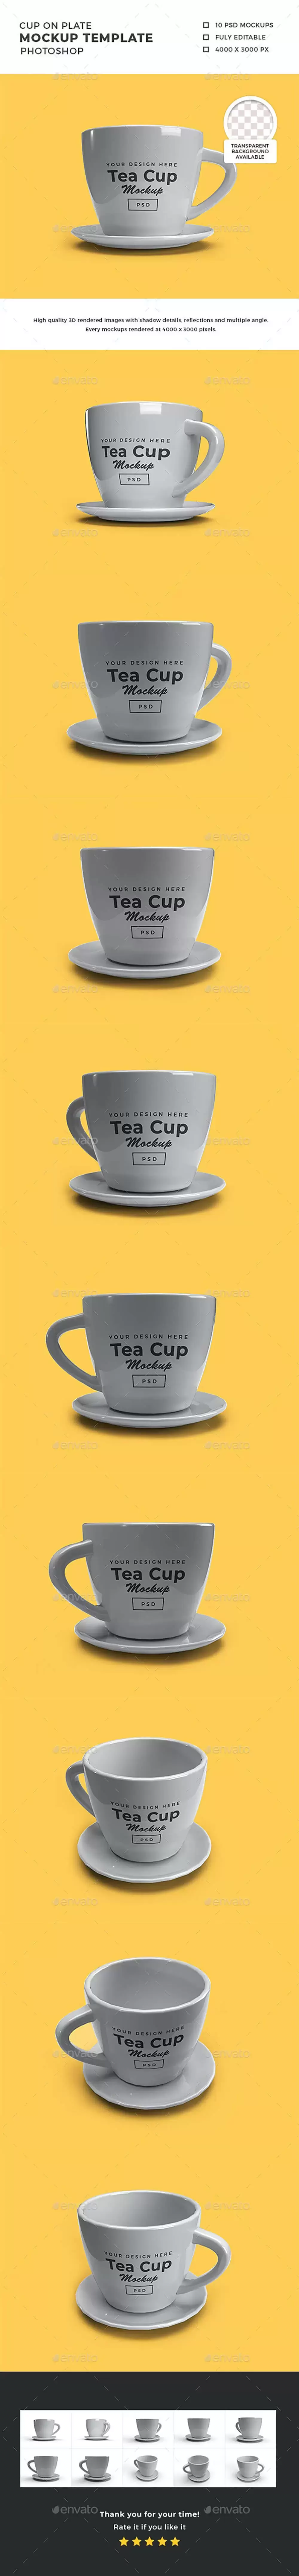 3D陶瓷茶托茶杯/咖啡杯设计样机 (psd)免费下载